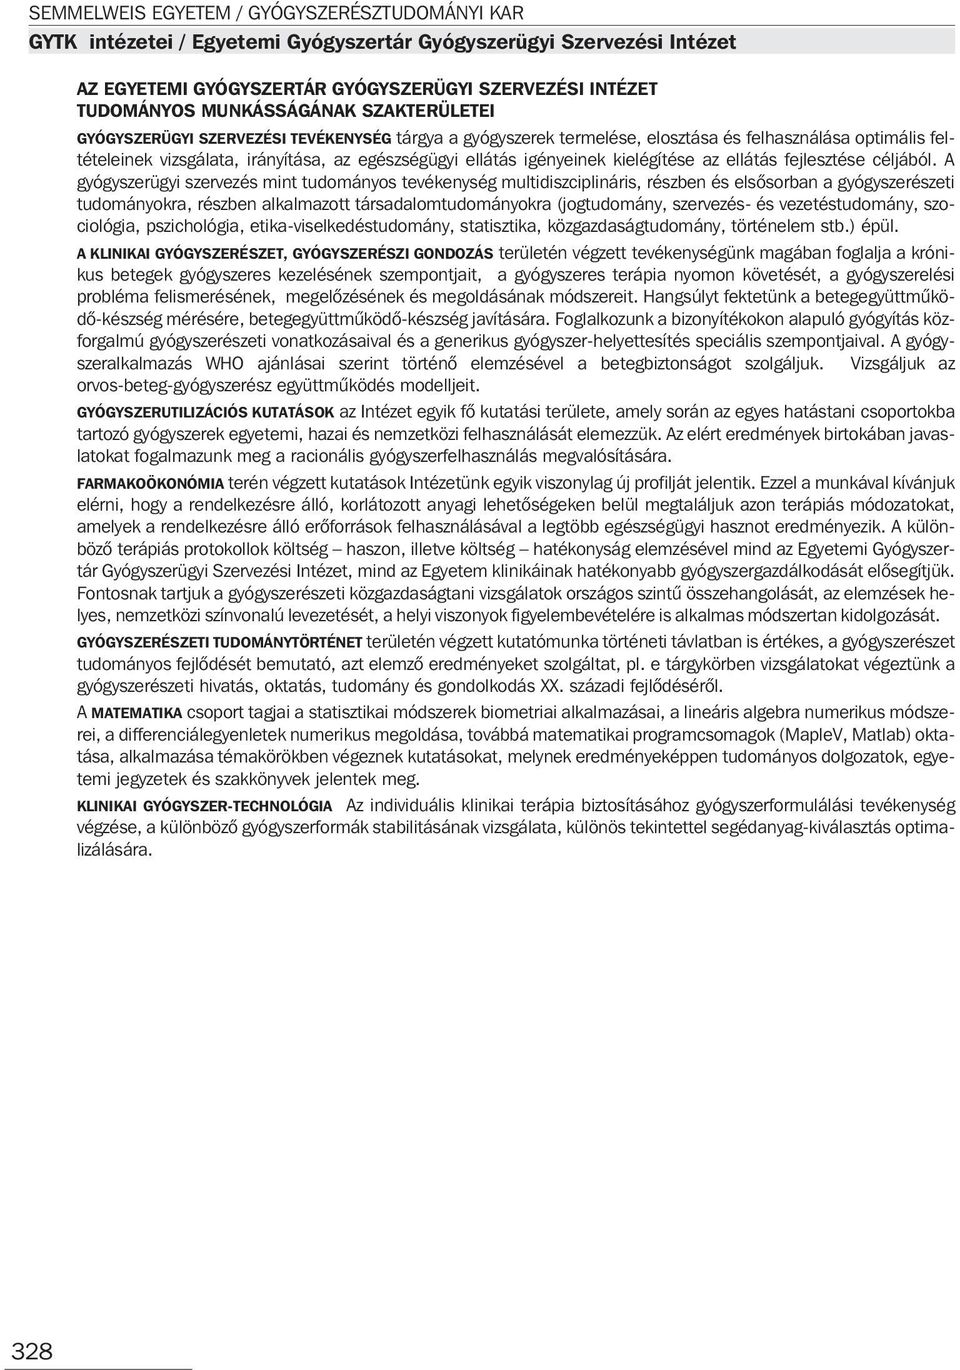 Semmelweis Egyetem Gyógyszerésztudományi Kar (GYTK) - PDF Ingyenes letöltés